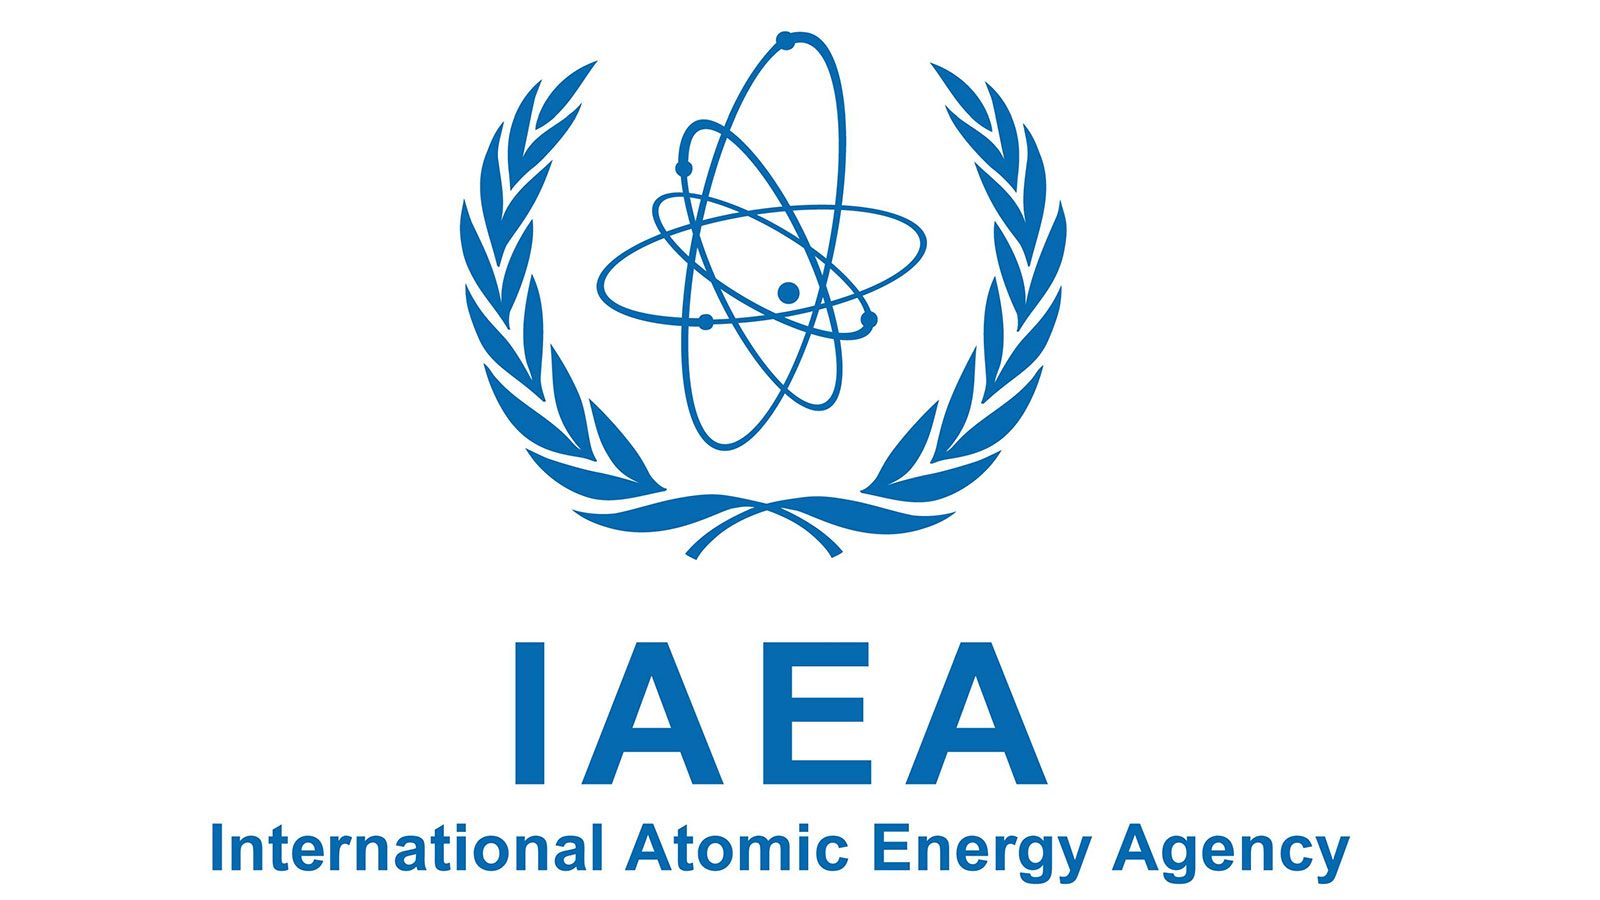 Investicijama IAEA-e 'Ruđer' juri prema novim prilikama